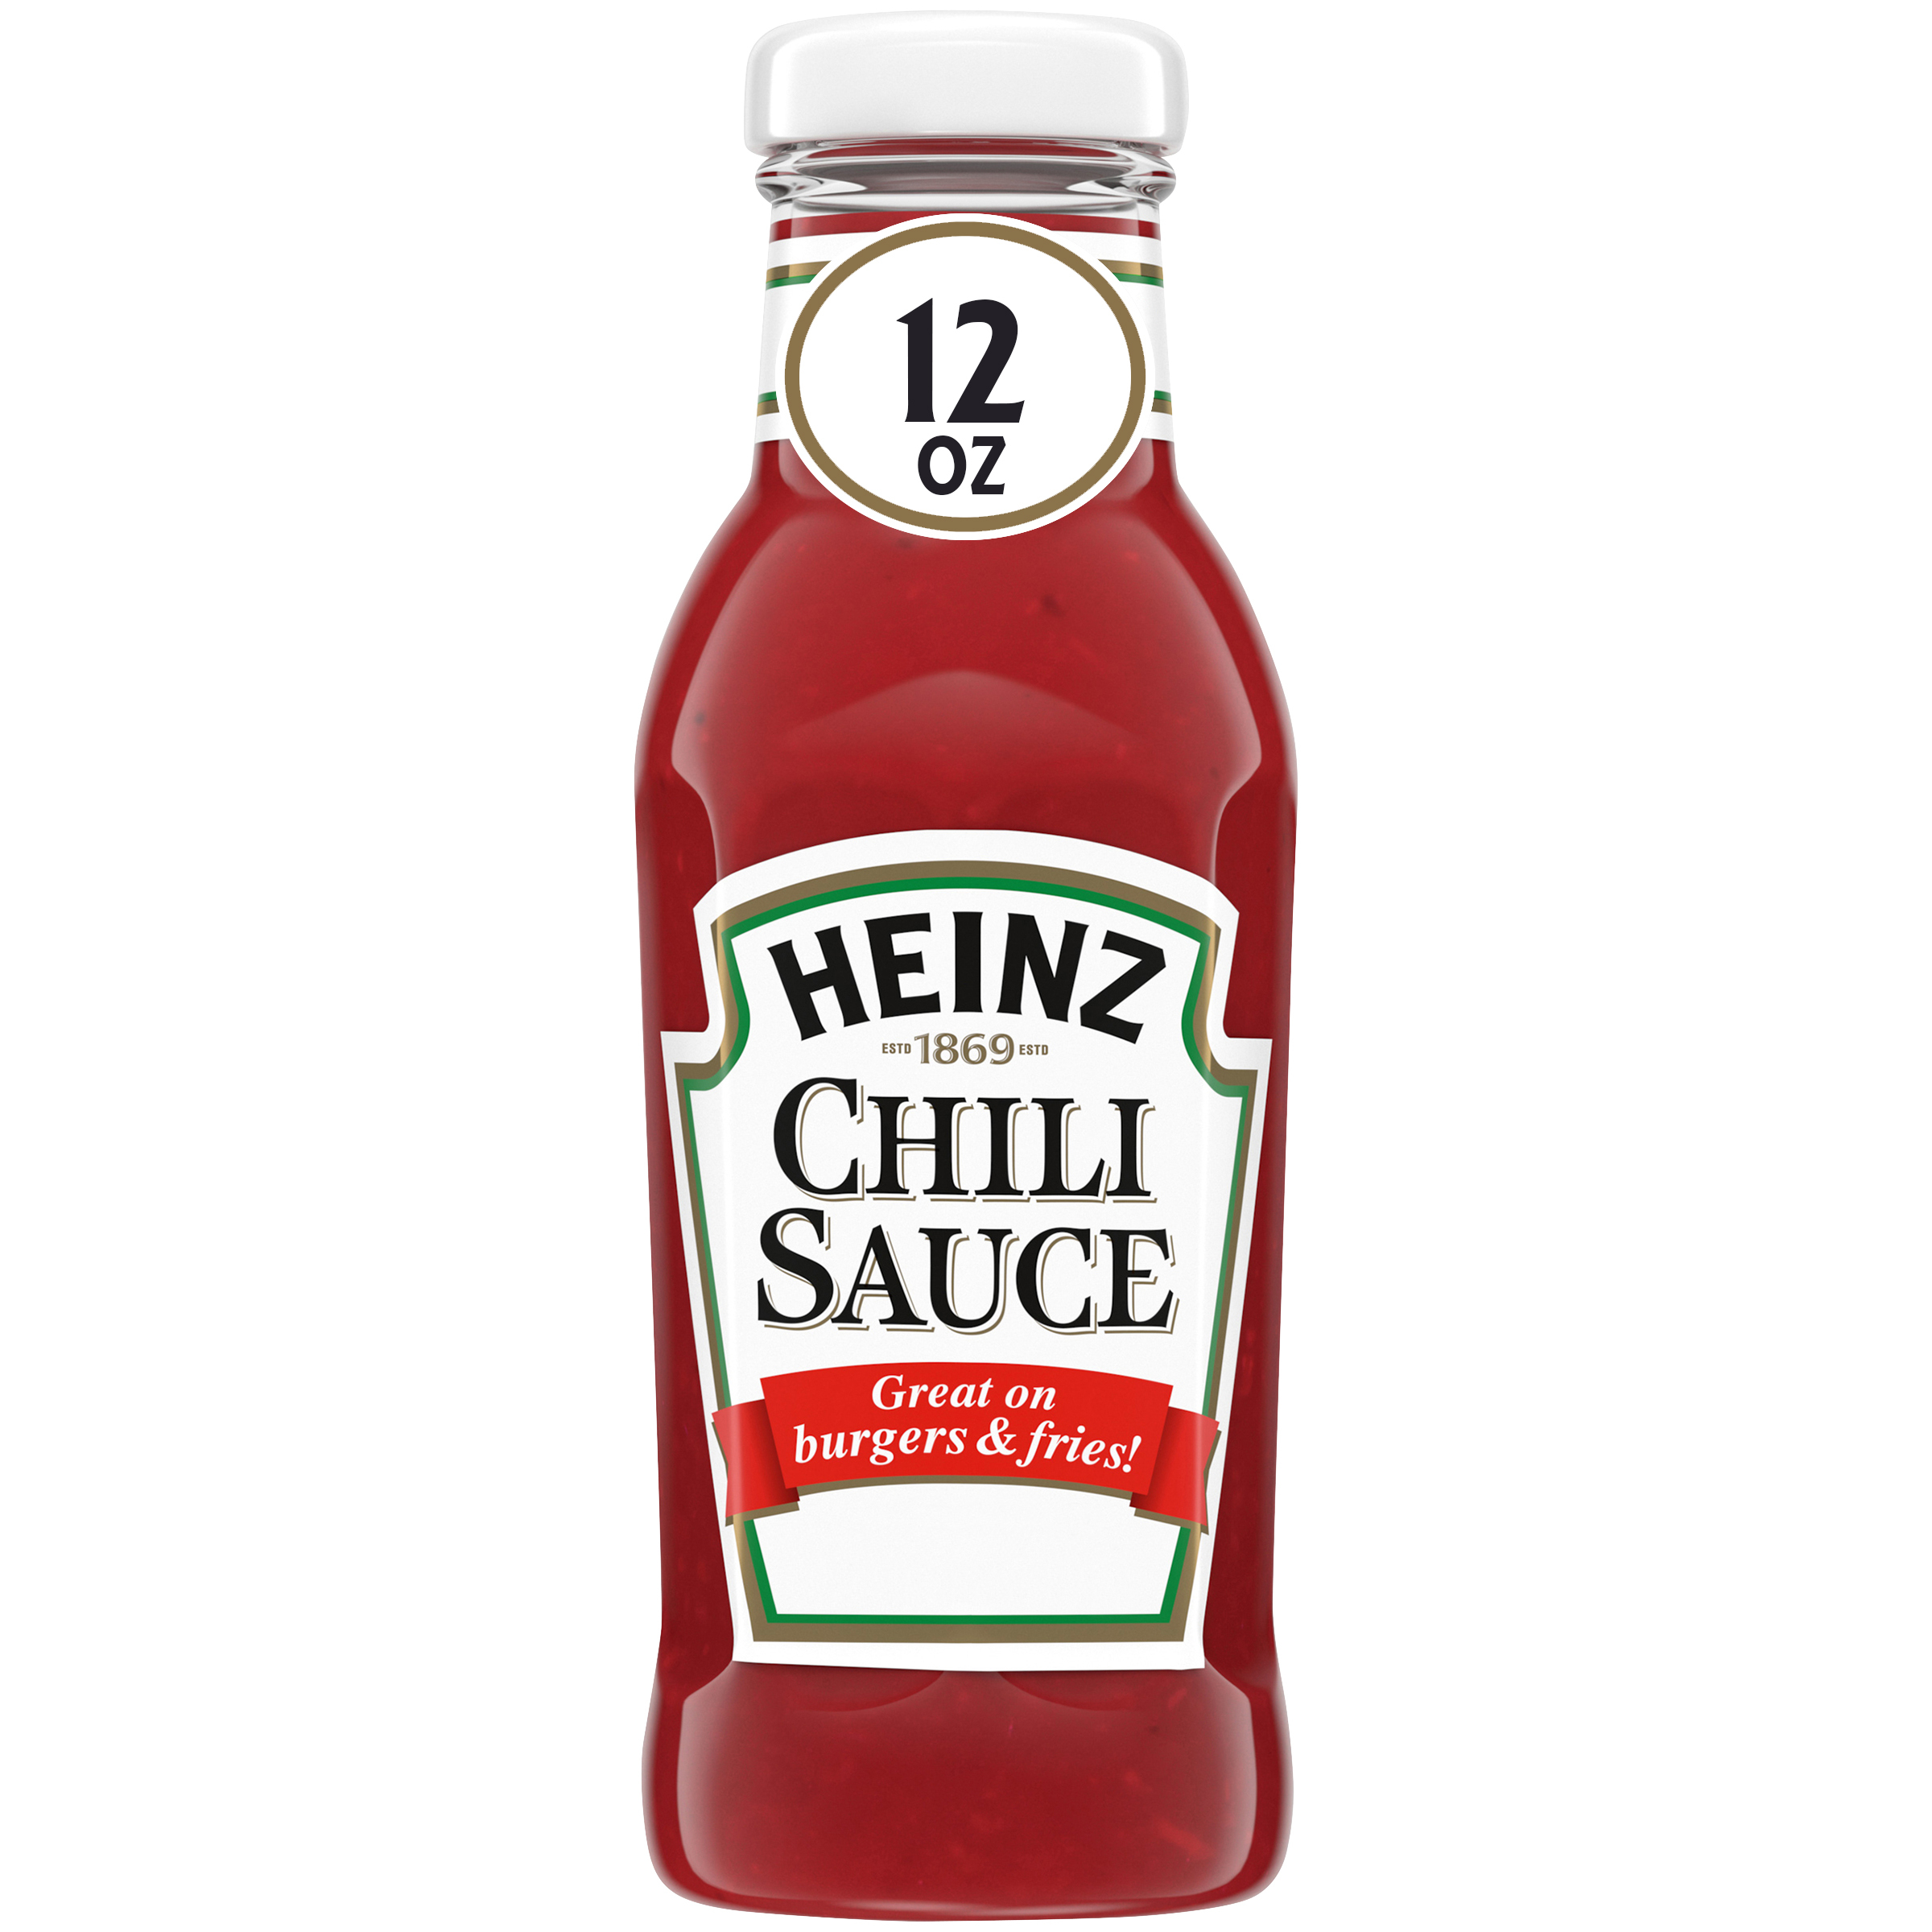 Heinz Chili Sauce, 12 oz Bottle - image 2 of 6